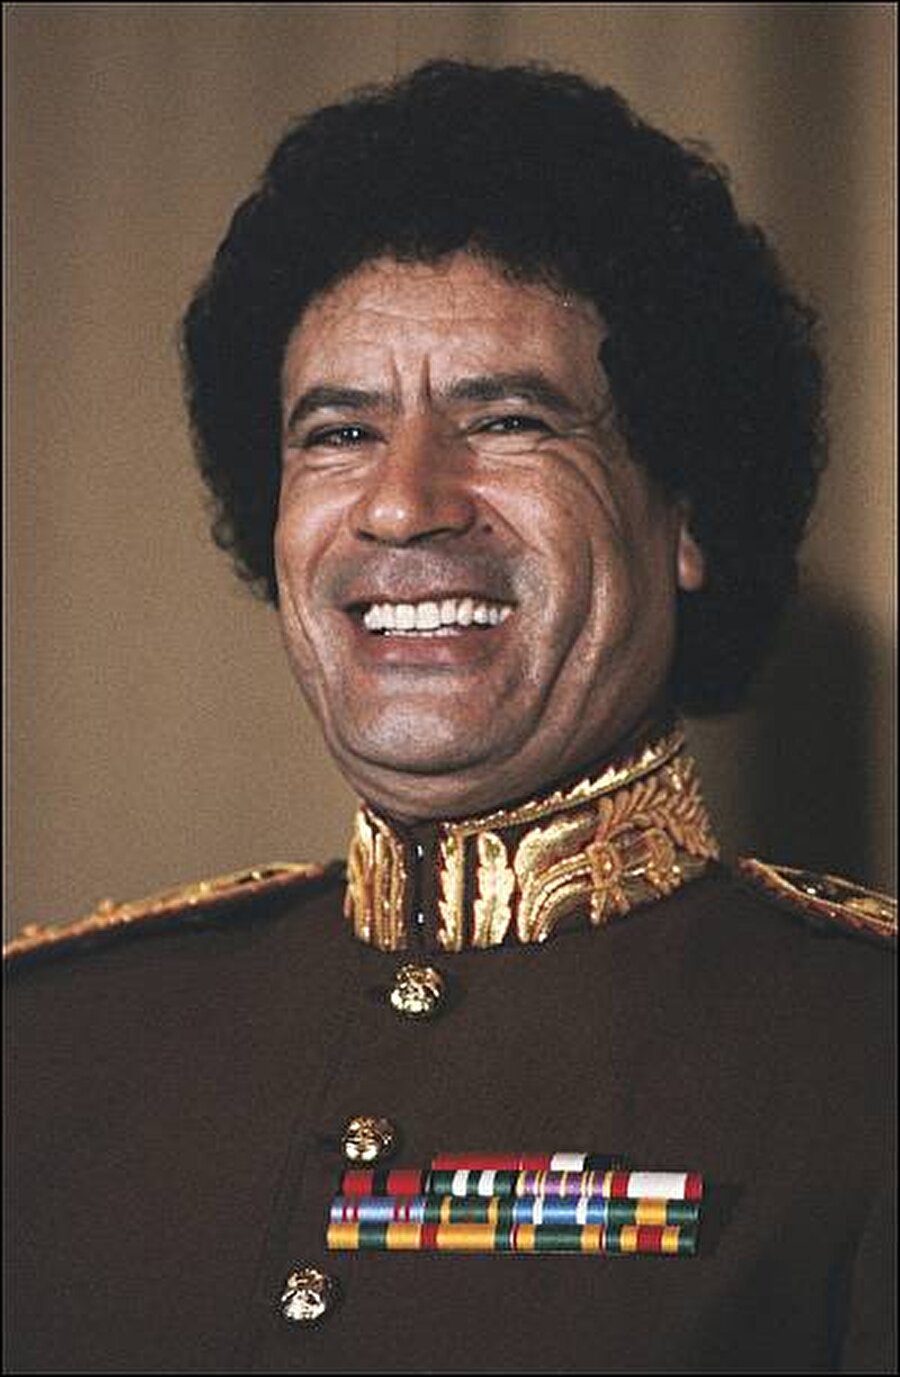 Darbe ile gelen yeni rejim ve dış politikası

                                    
                                    
                                    
                                    
                                    
                                    Sosyalist düzene geçileceğini, Kuran-ı Kerim’in buyruklarının uygulanacağını, üçüncü dünya ülkeleriyle ilişkilerin geliştirilerek emperyalizmle mücadele edileceğini duyurdu. Kaddafi yönetimi ABD ve öteki batılı ülkelerce tanındı. Arap Dünyasının önderi Mısır Devlet Başkanı Cemal Abdülnasırın uygulamalarını kendine örnek alan Kaddafi, ABD ve İngiliz askeri üslerini kapattı. Bankaları ve petrolü devletleştirmesi yaptığı ilk icraatlardan oldu. Ocak 1970’te yeniden düzenlenen hükümette başbakanlık ve savunma bakanlığını üstlenirken, başbakan yardımcılığı ve içişleri bakanlığına Binbaşı Abdülselam Callud’u atadı. 
                                
                                
                                
                                
                                
                                